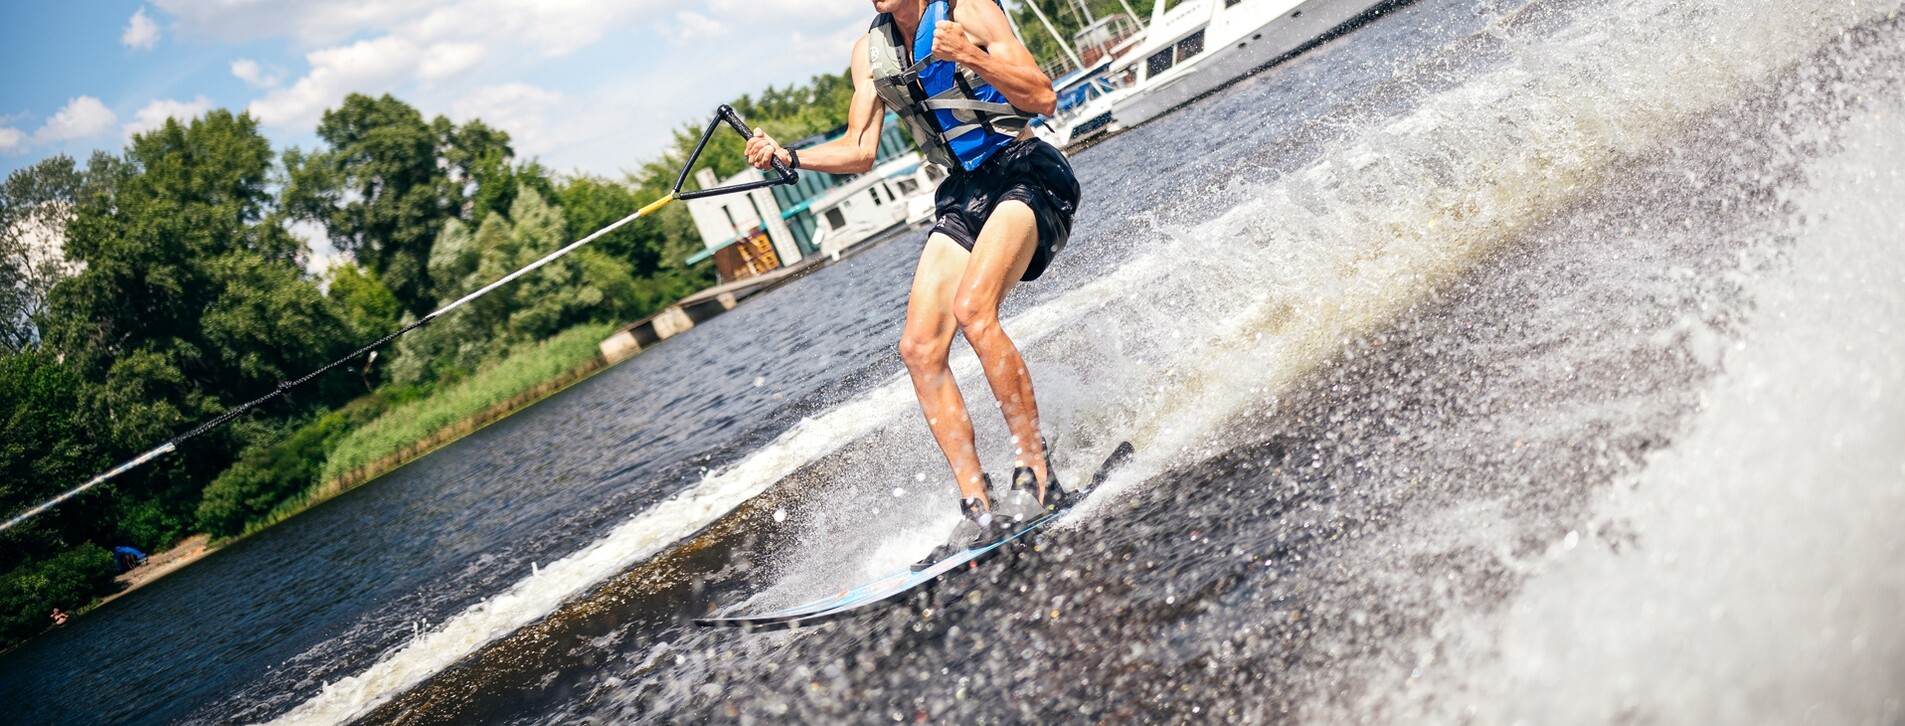 Фото 1 - Катание на водных лыжах для компании